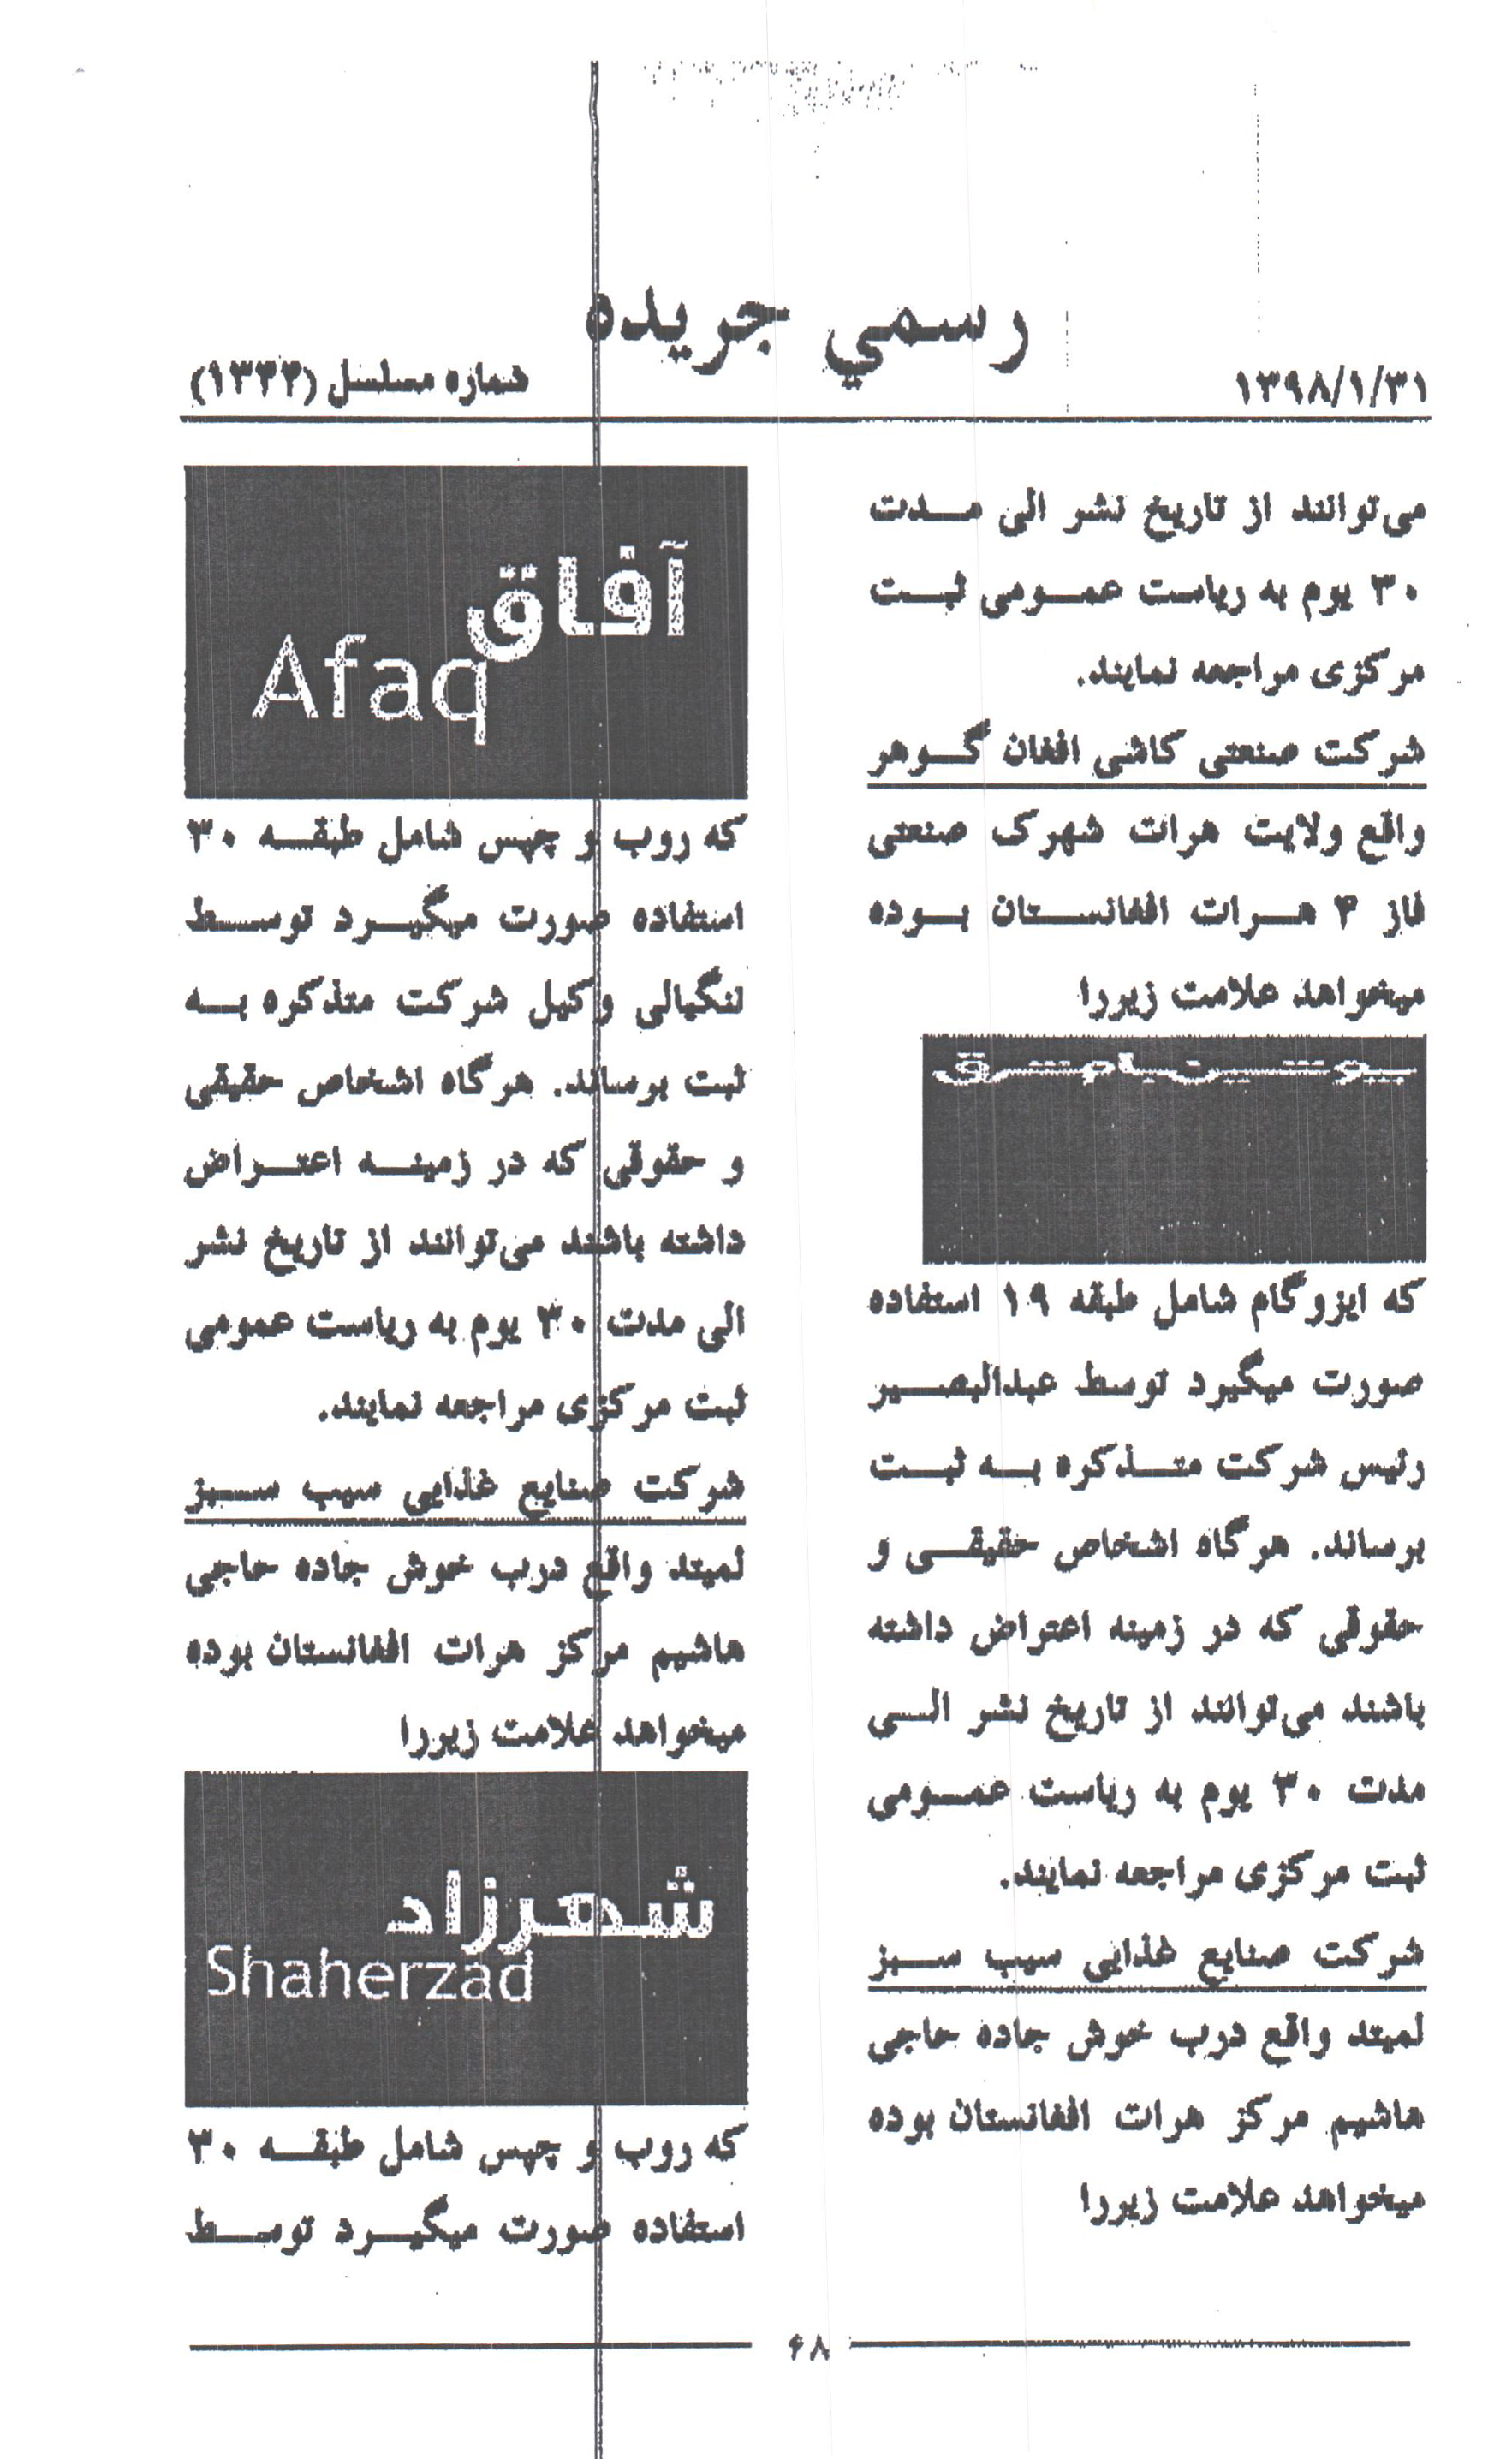 ثبت برند شرکتهای پوشین سیمان باقران بیرجند و سیمان ایراف شرکتهای افغانی